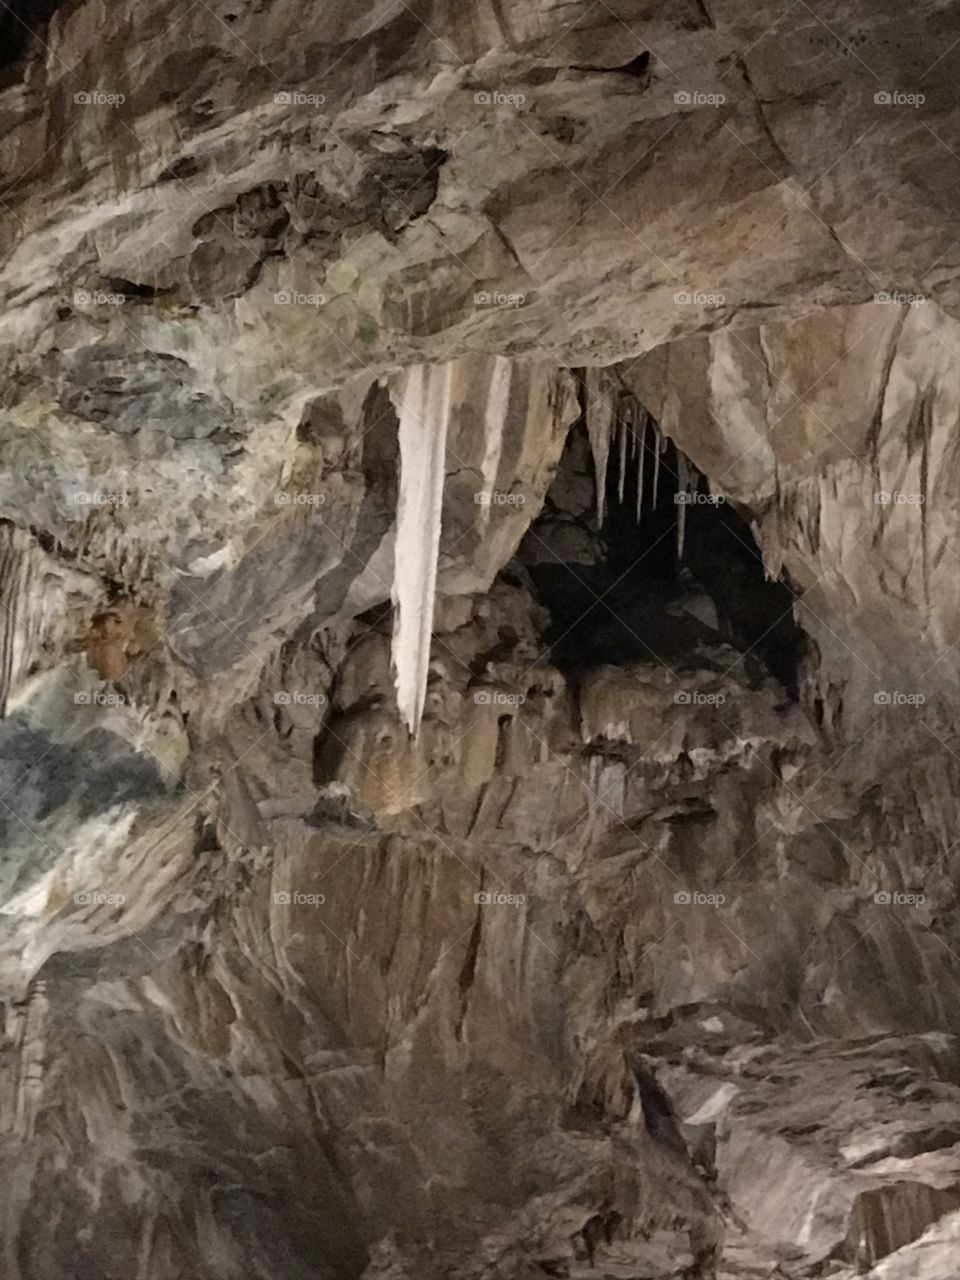 Grotte Bossea 